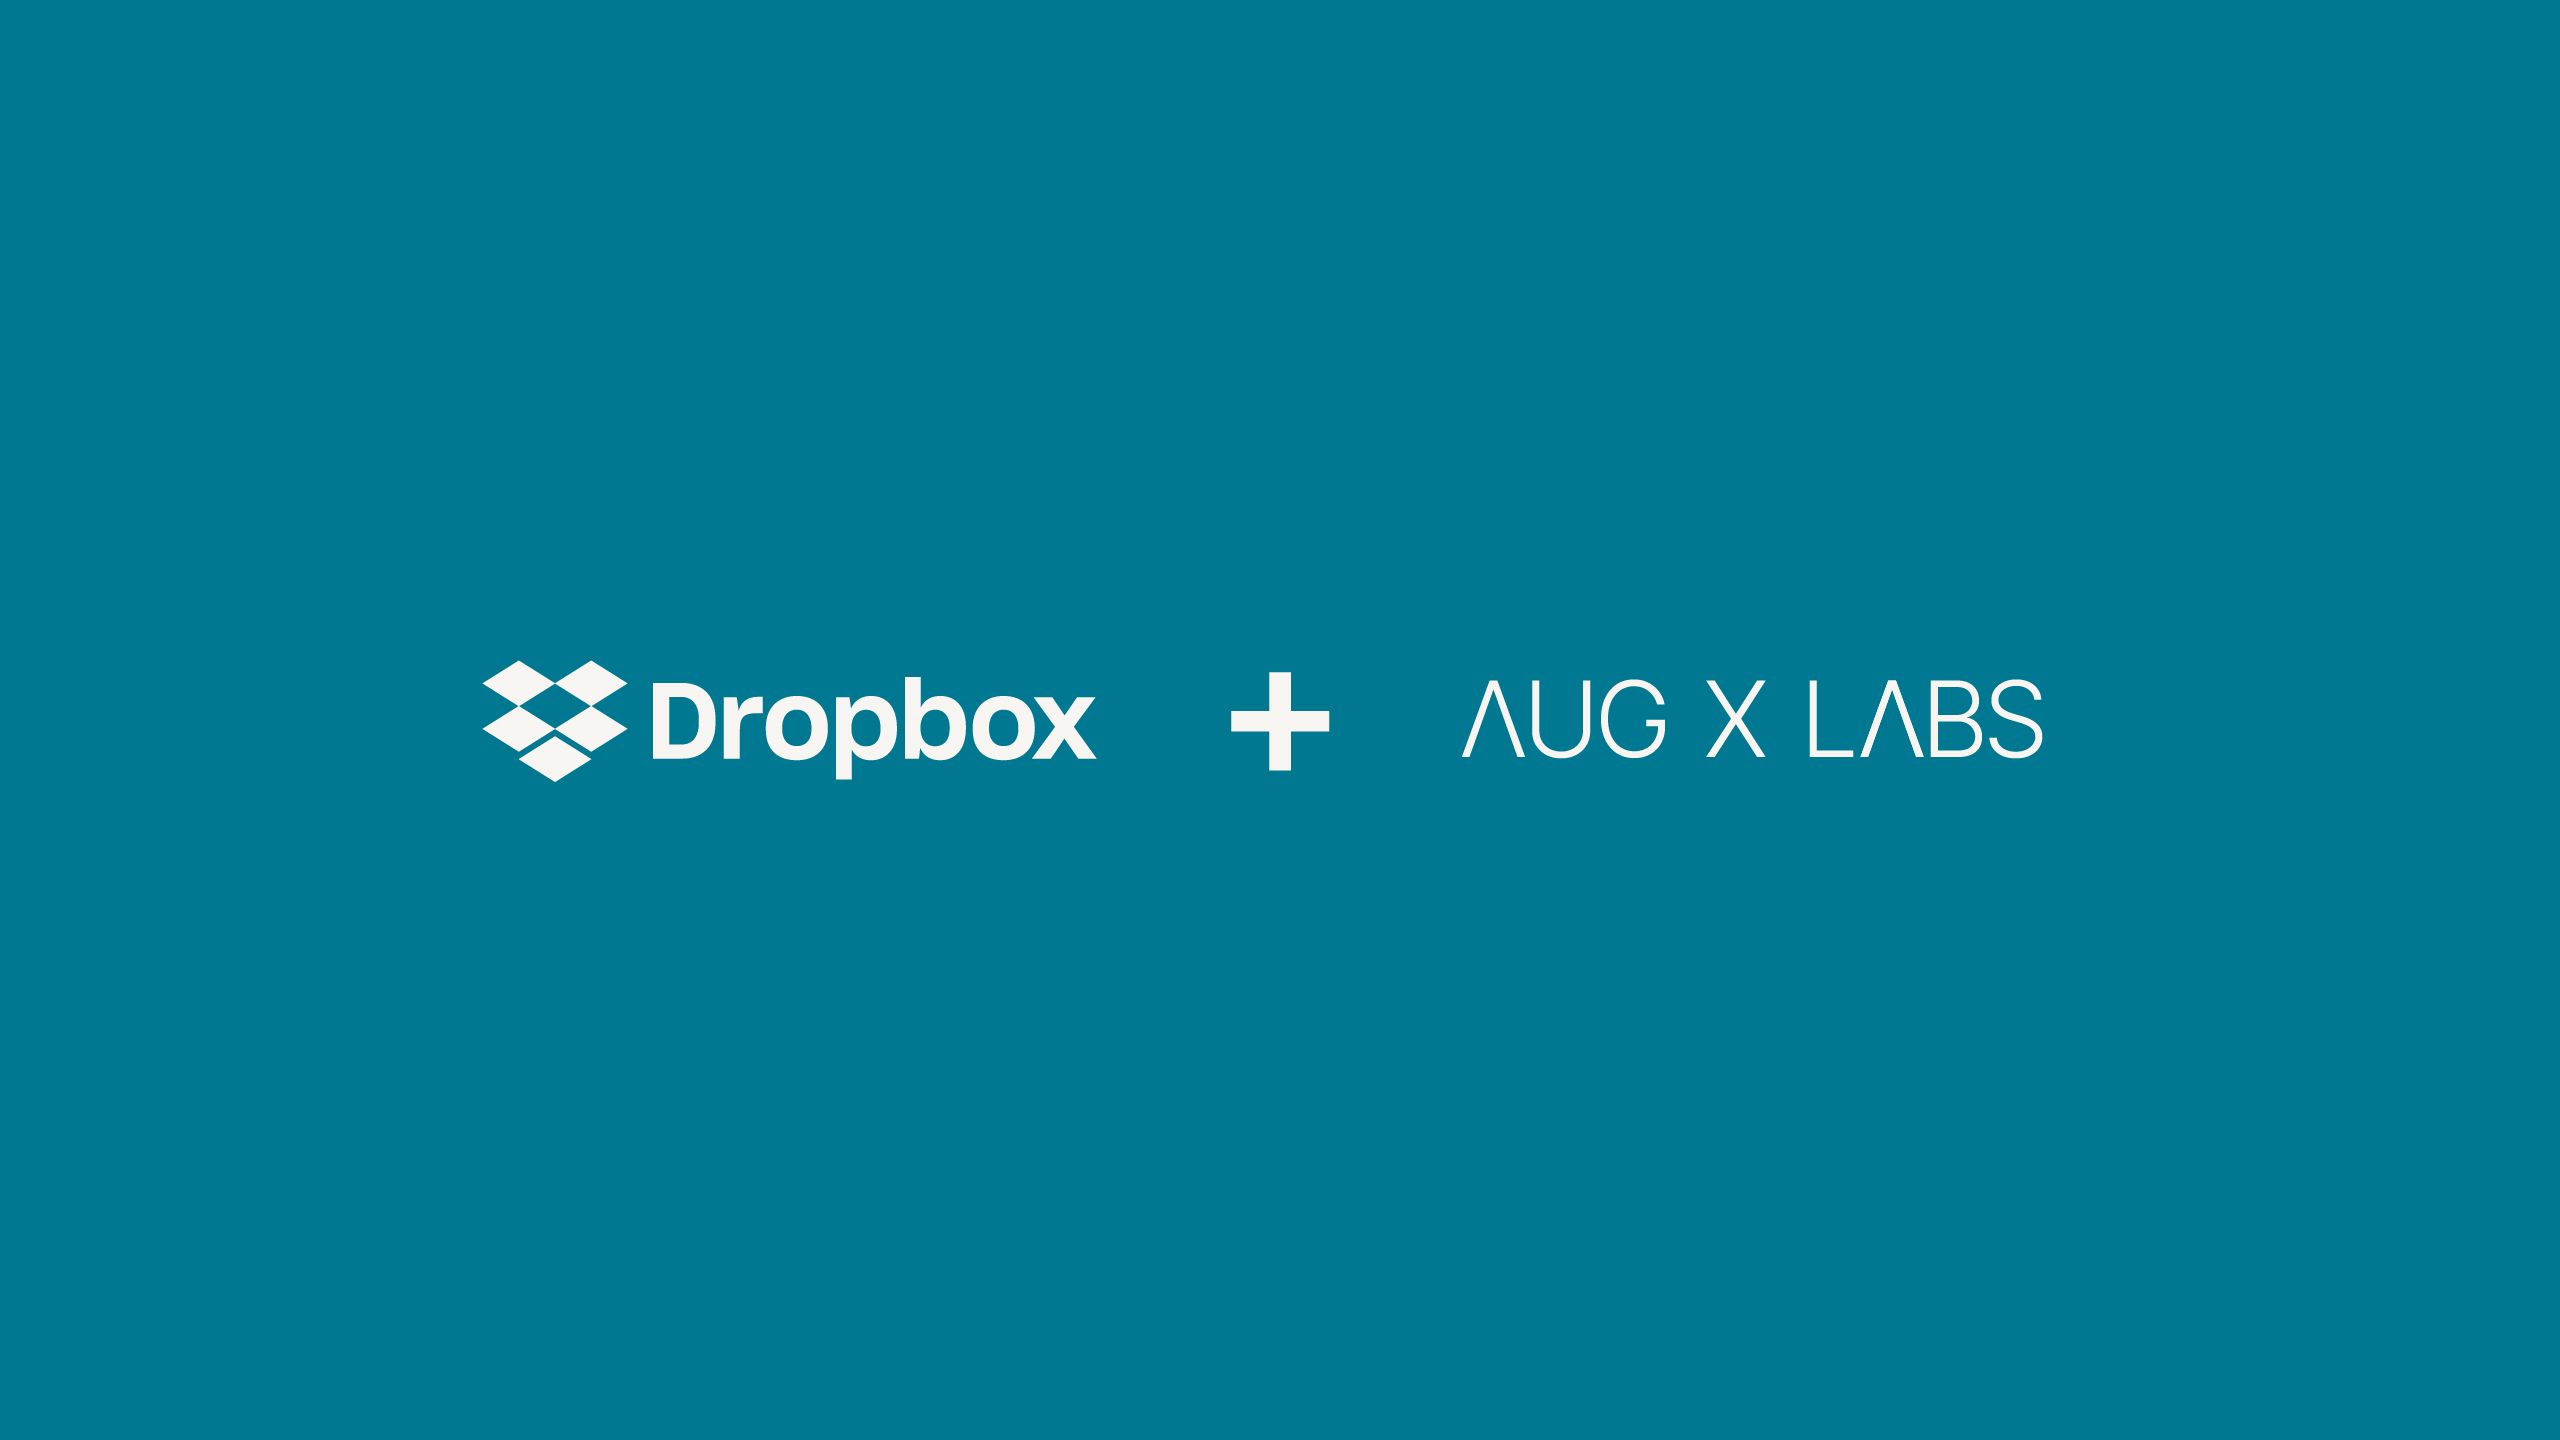 Dropbox と Aug X Labs のパートナーシップのロゴ  